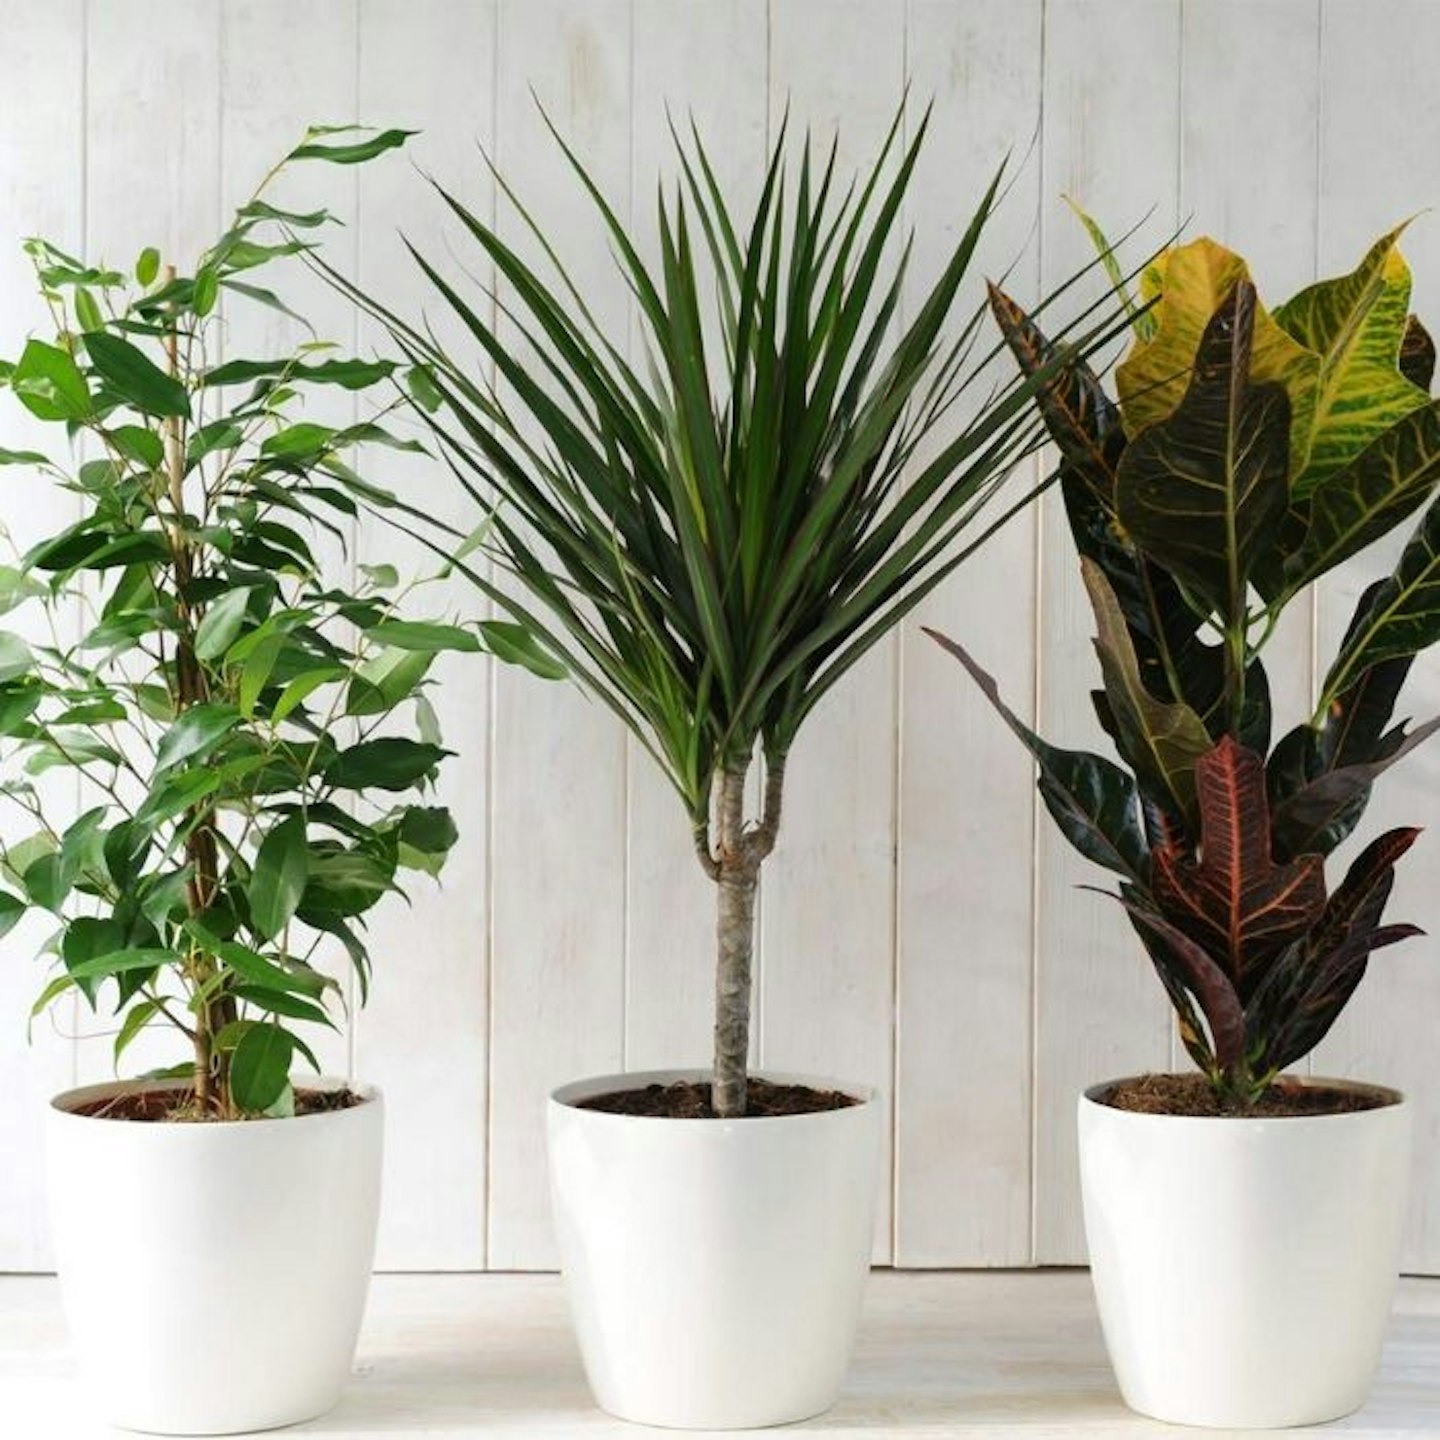 Evergreen Indoor House Plants